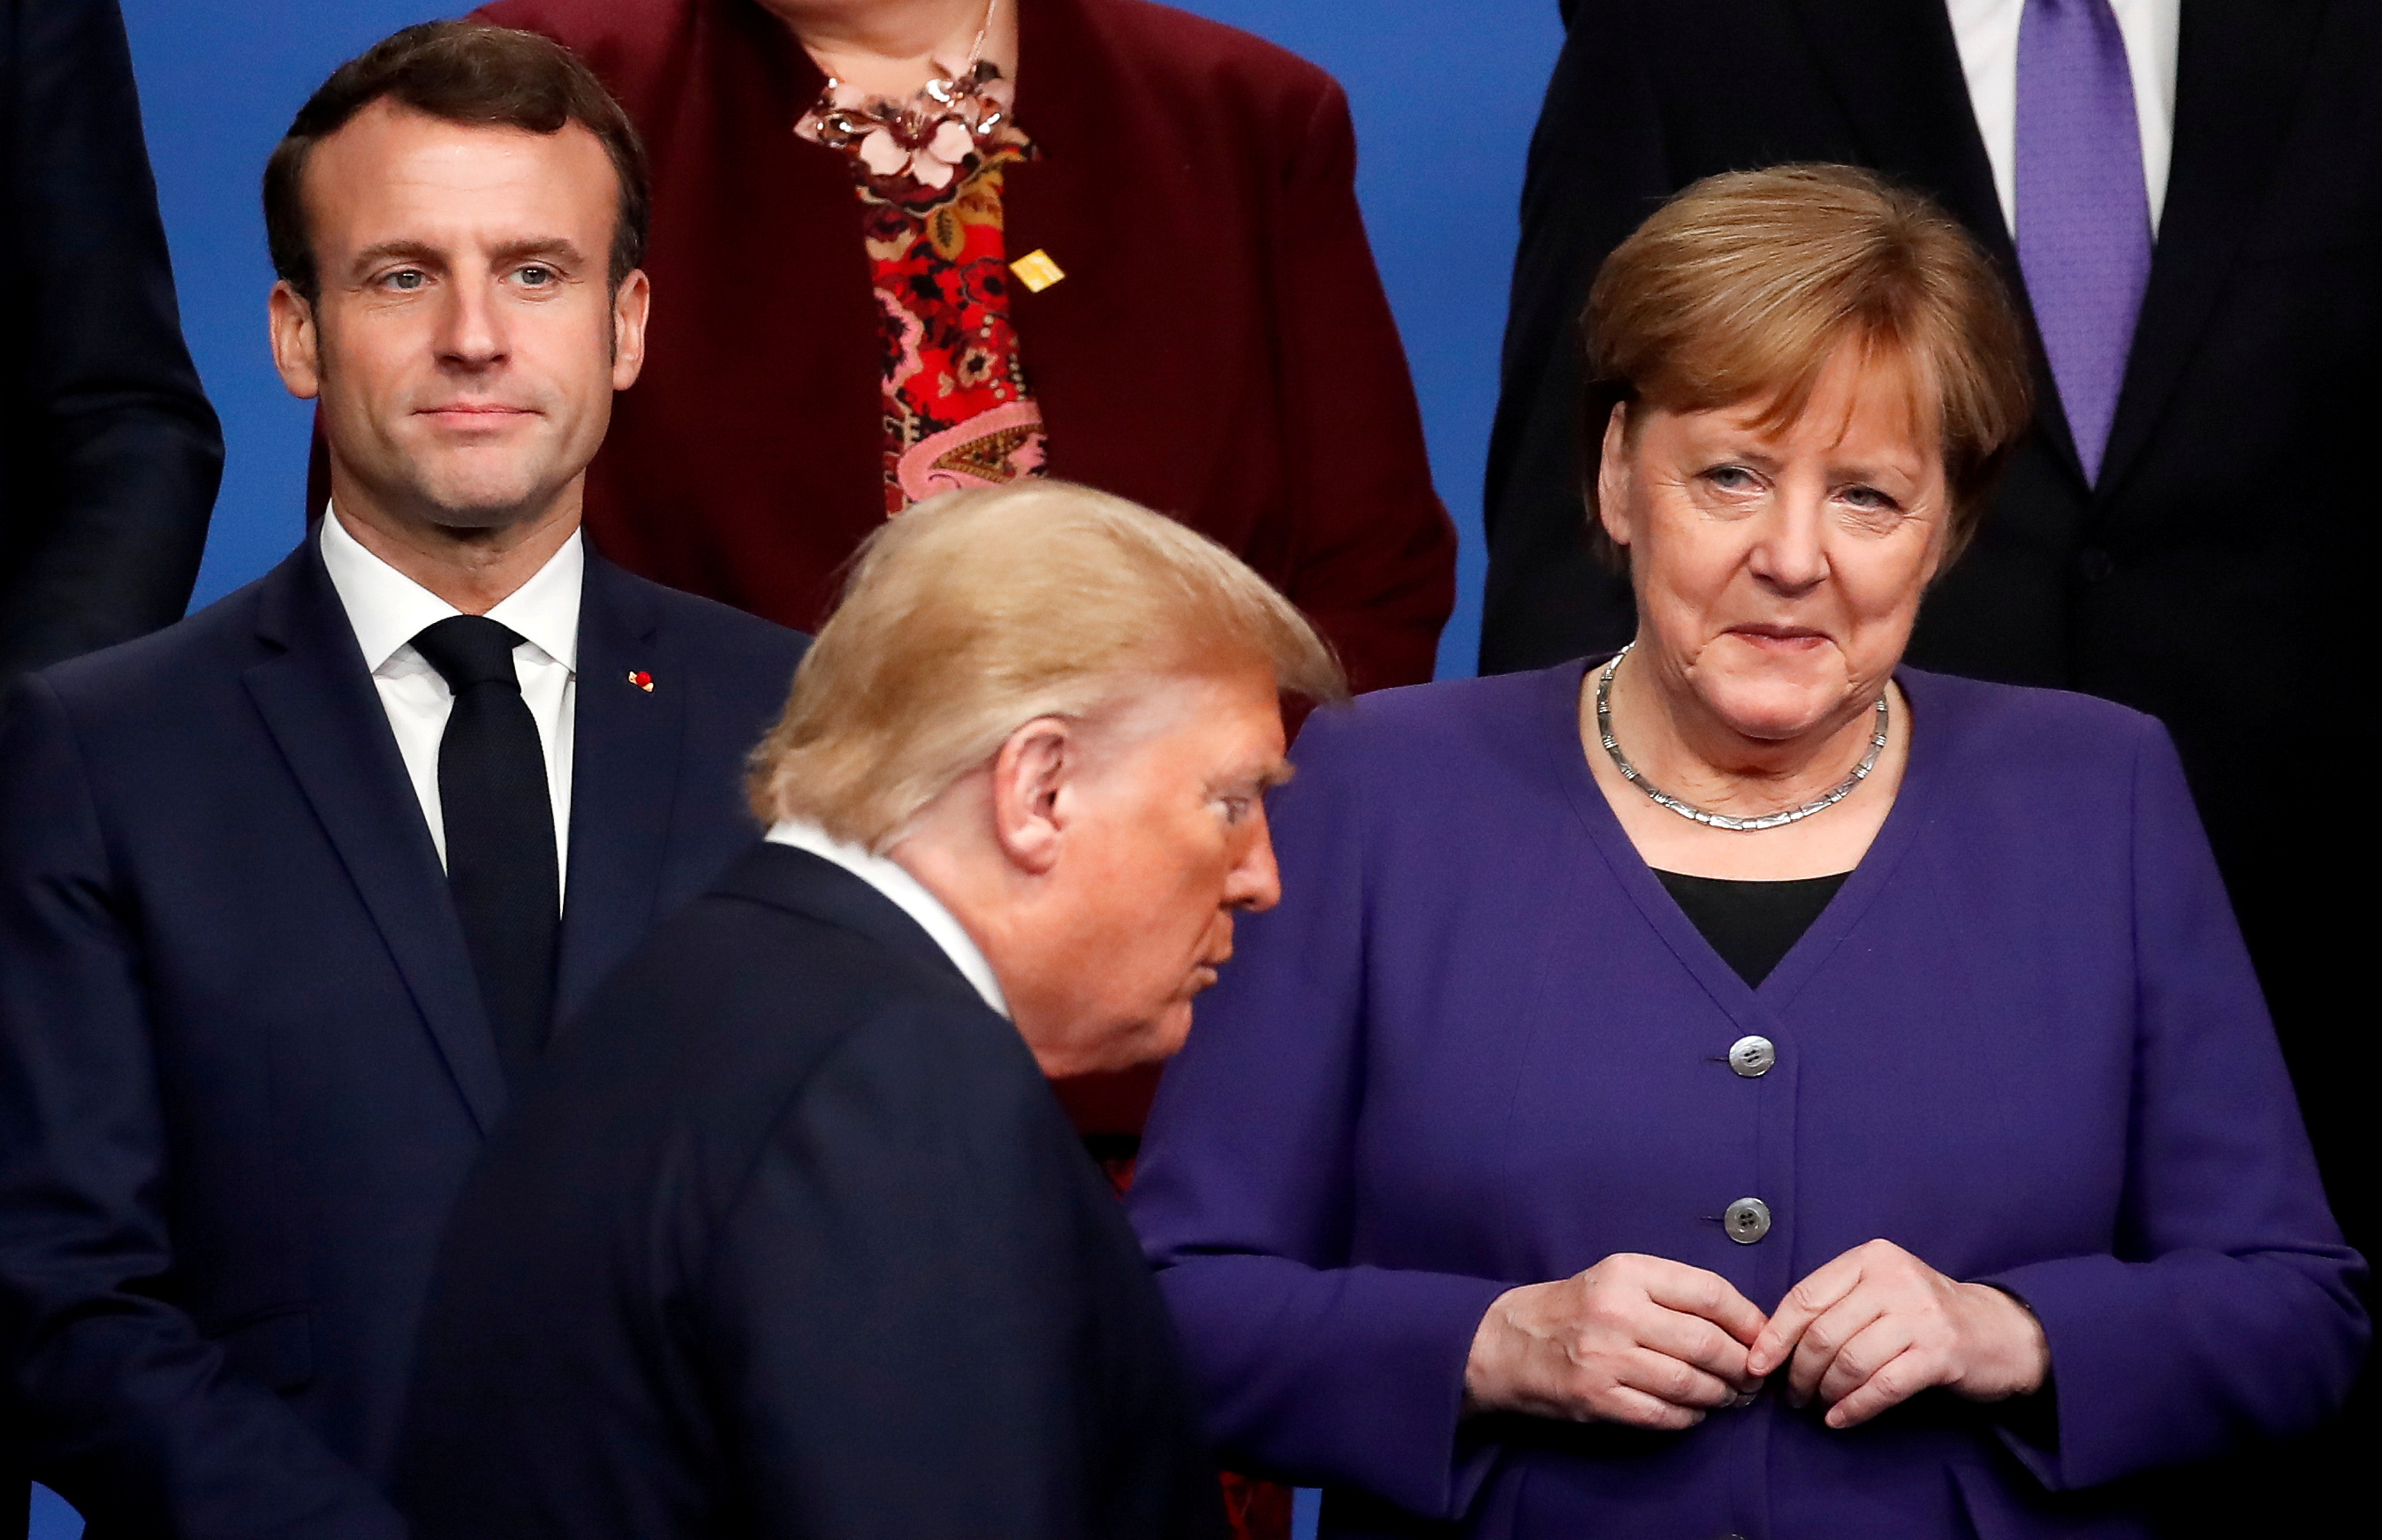 El presidente de Francia Emmanuel Macron y la canciller de Alemania Angela Merkel miran al presidente Donald Trump durante una foto de familia en la cumbre de líderes de la OTAN en Watford, Reino Unido, el 4 de diciembre de 2019 (REUTERS/Christian Hartmann/Pool/File Photo/File Photo)